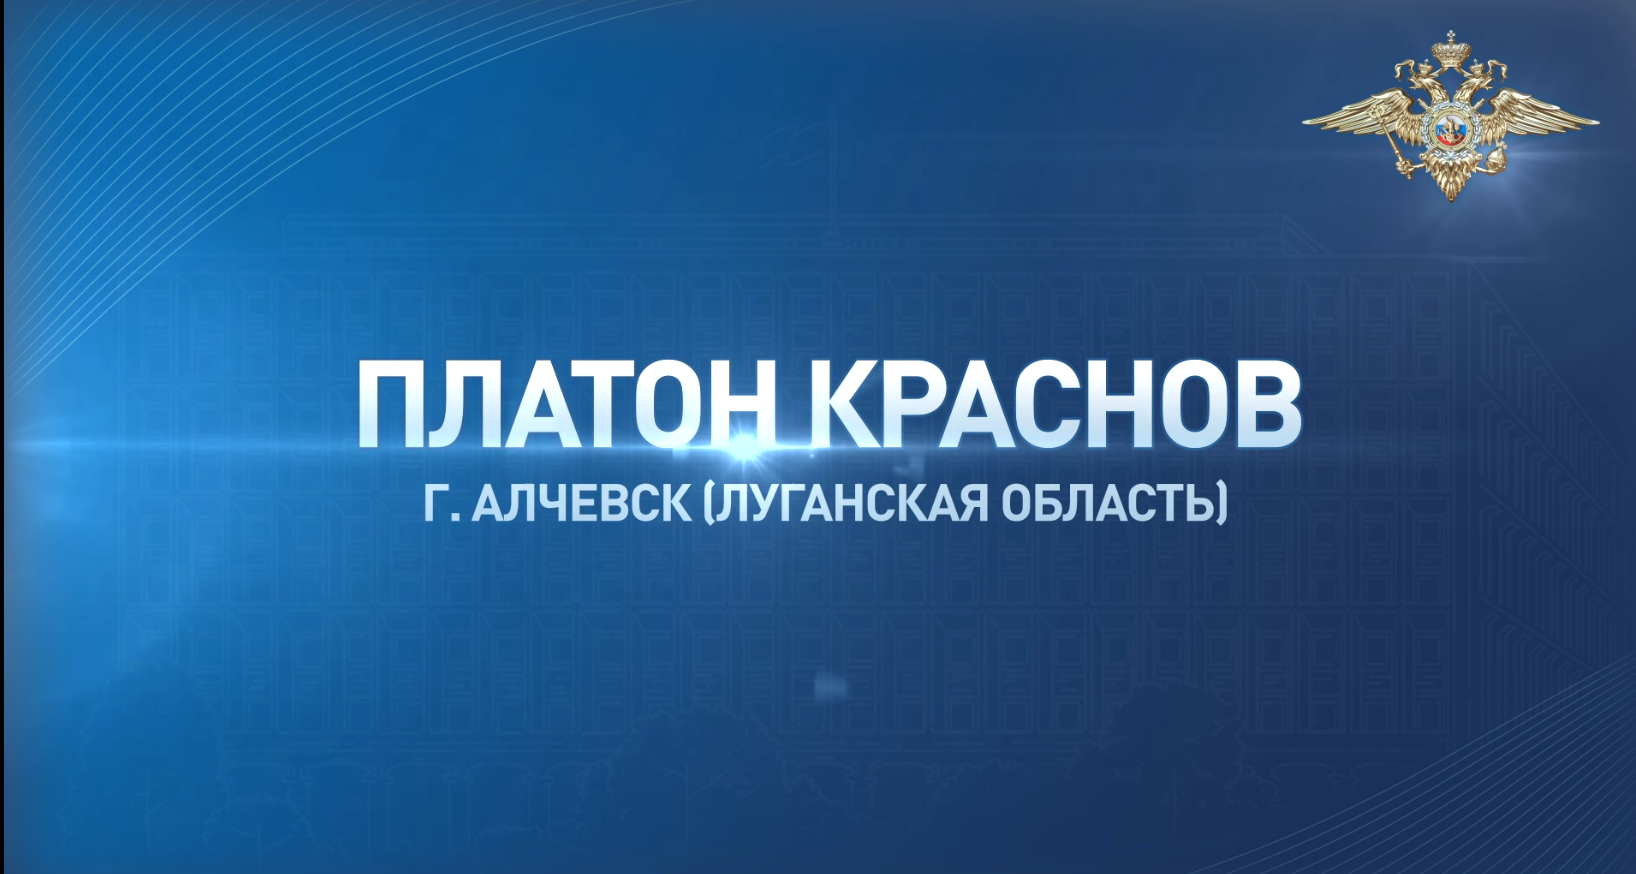 Платон Краснов из Луганской Народной Республики предотвратил трагедию, обнаружив боеприпас